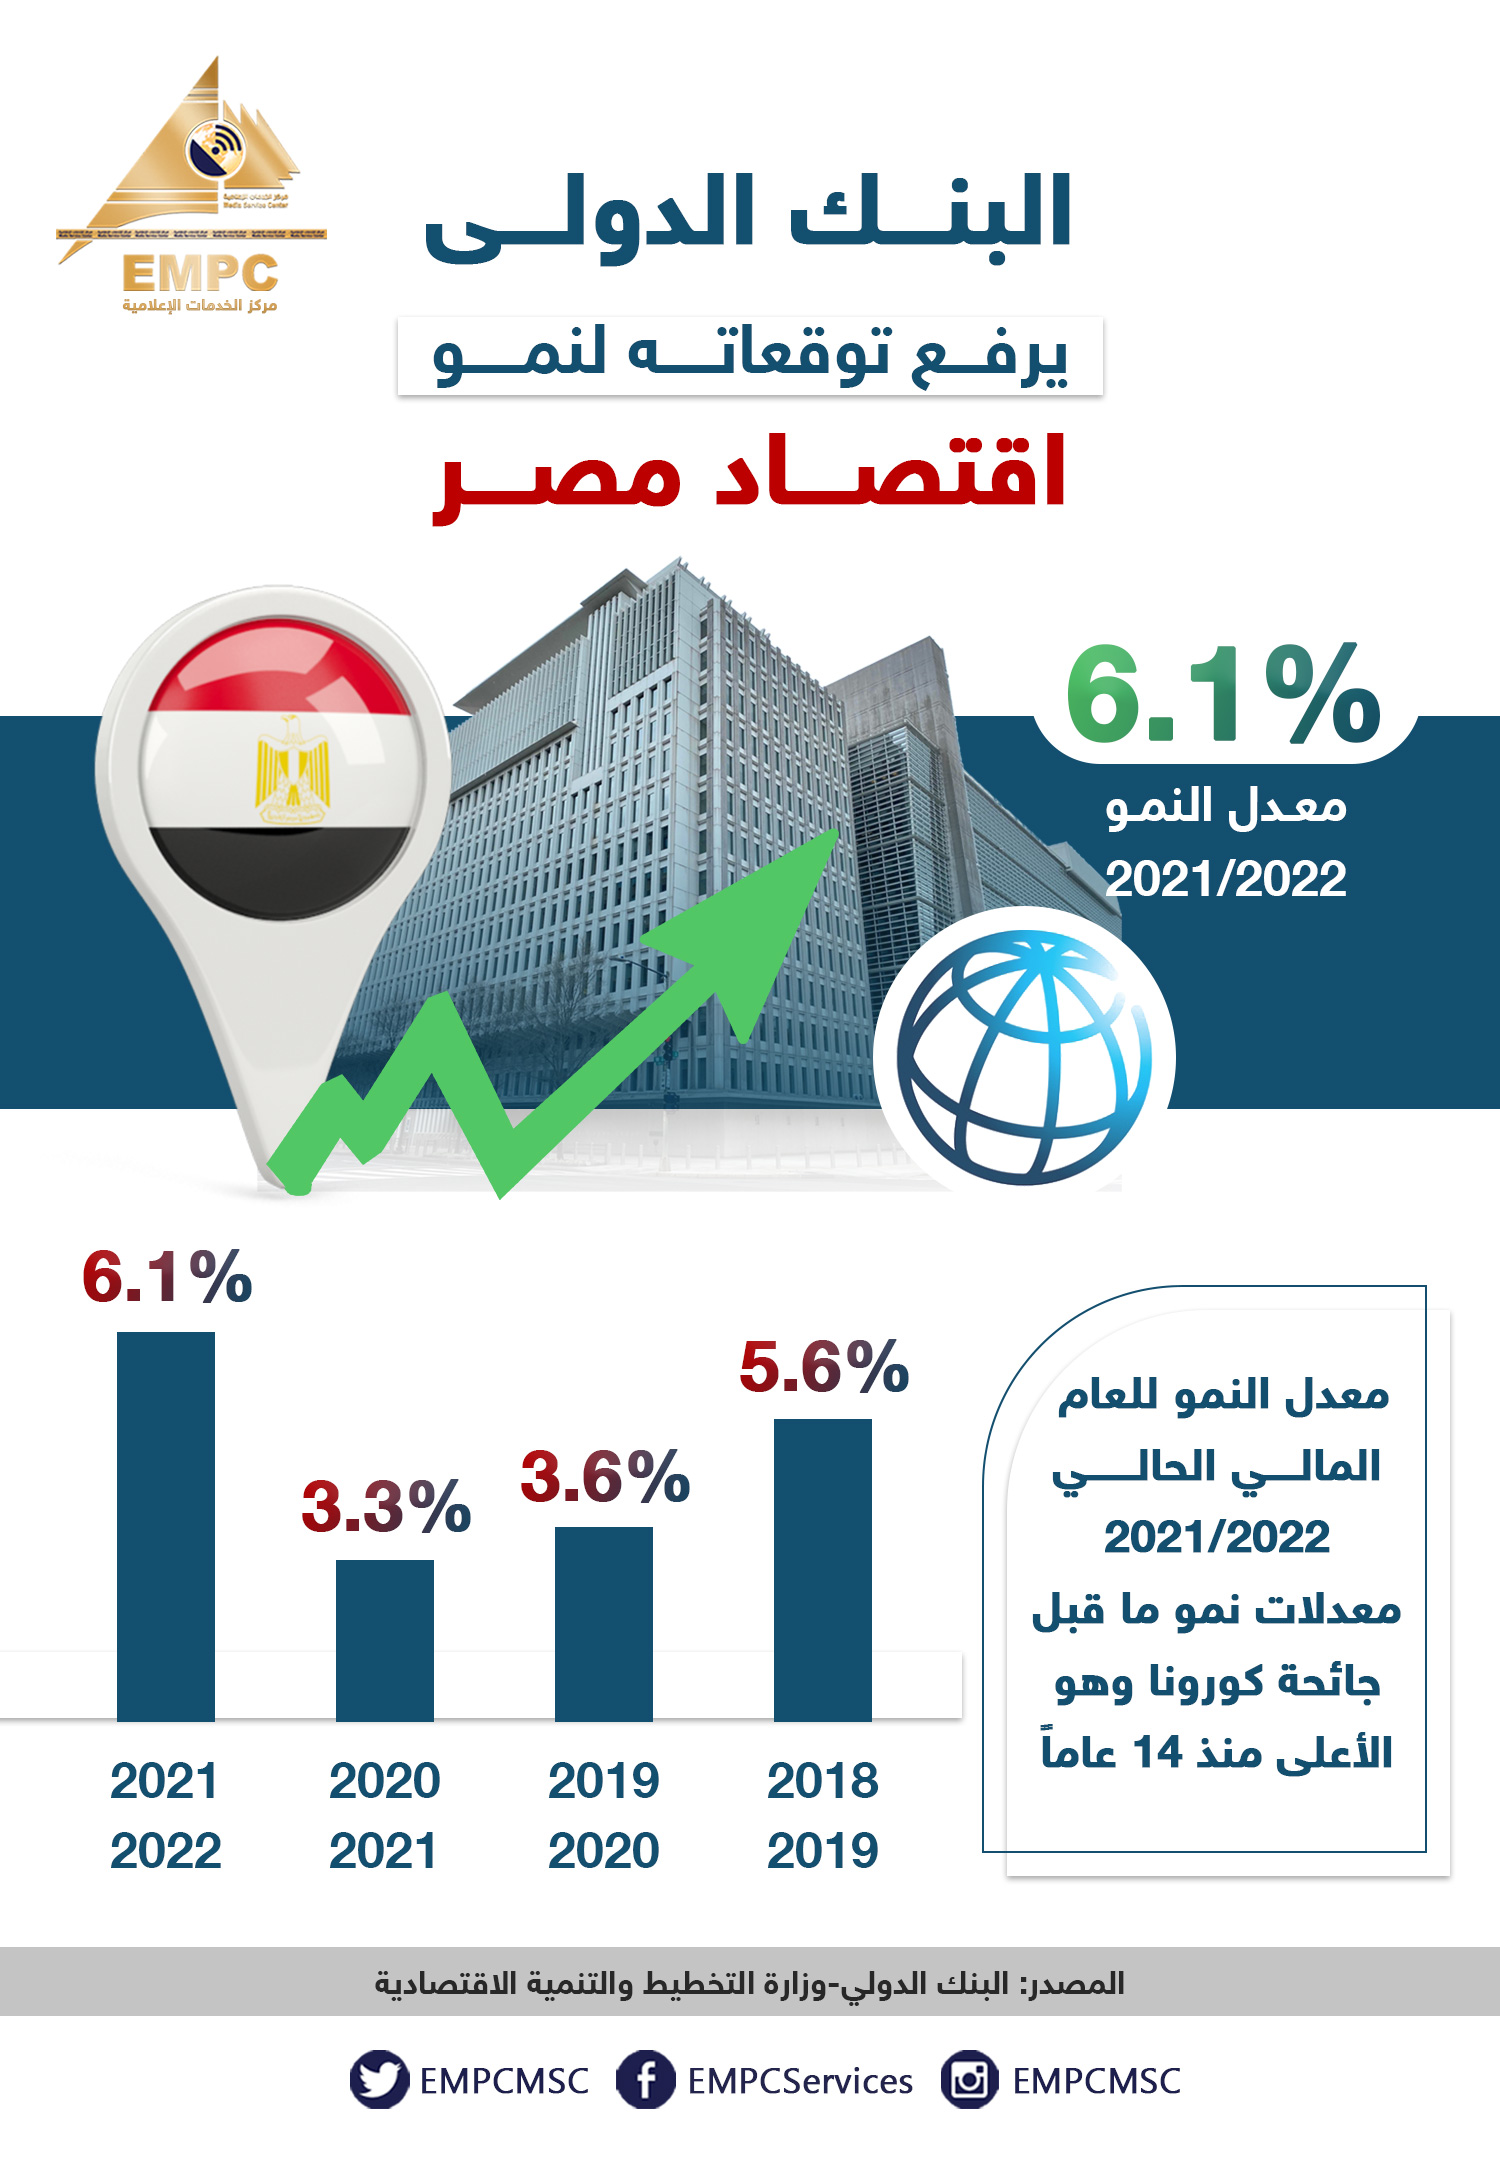  البنك الدولي يرفع توقعاته لنمو اقتصاد مصر لتتجاوز ما قبل كورونا